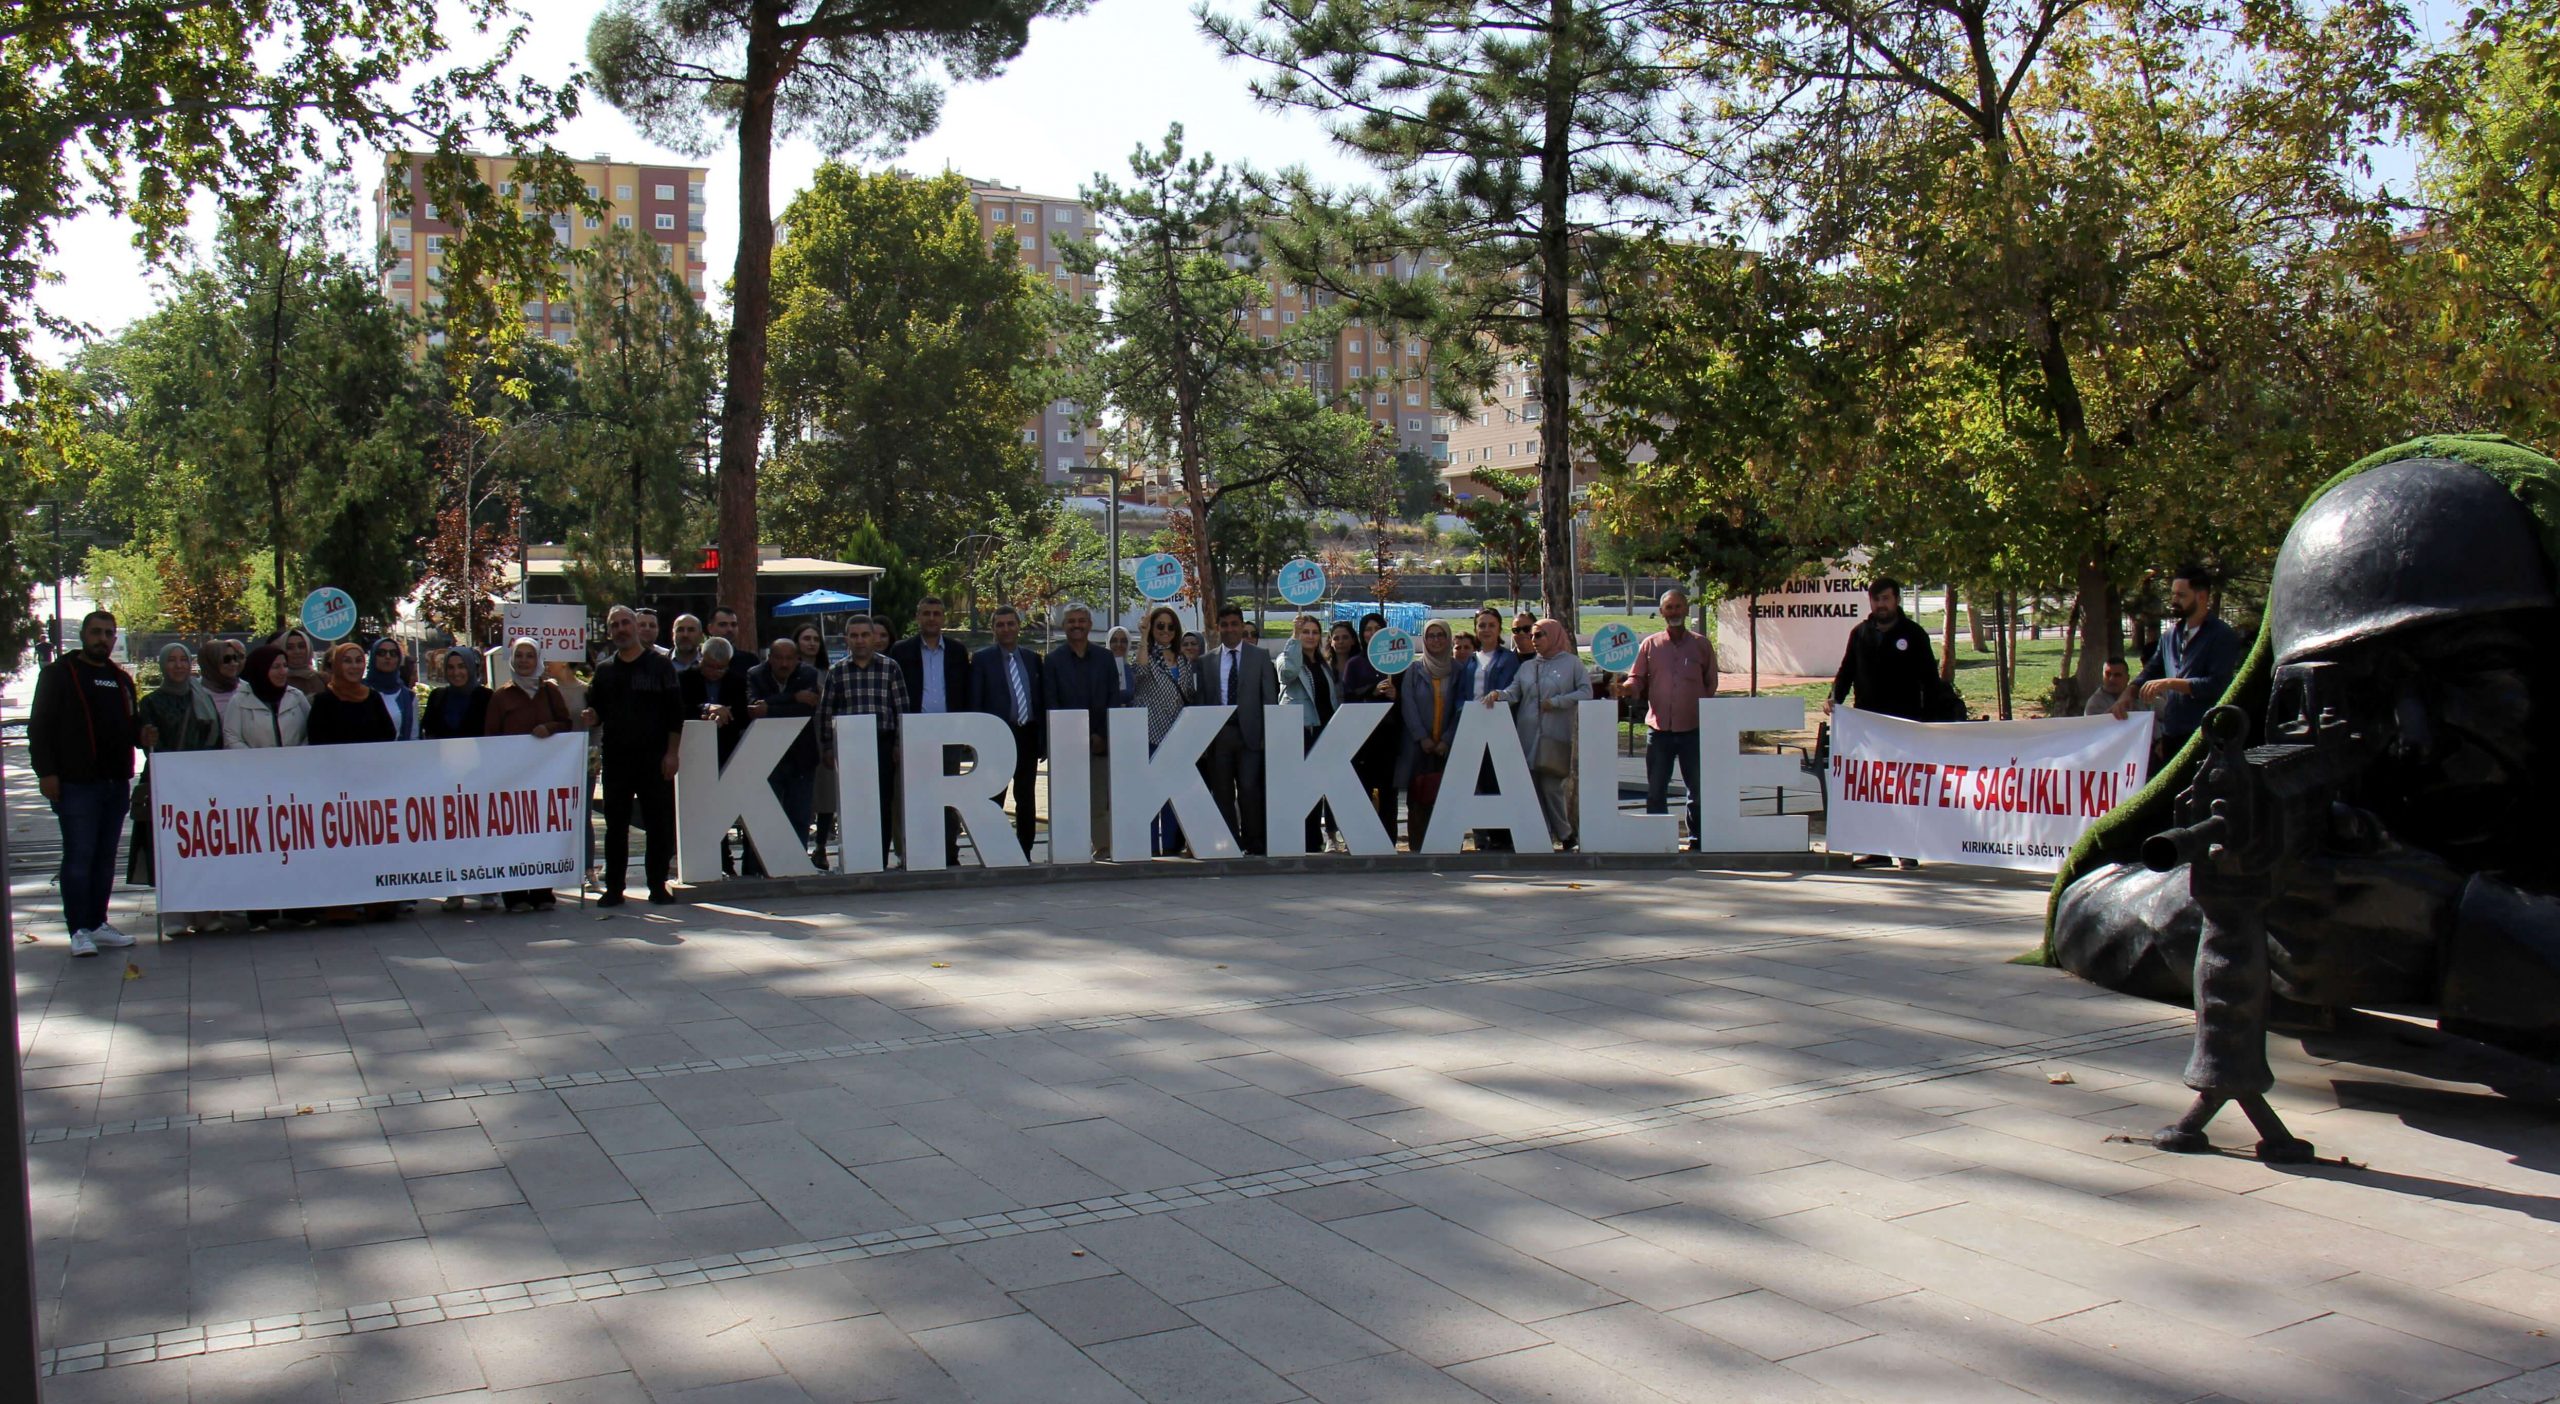 kirikkale-saglik-mudurlugu-personelleri-dunya-yuruyus-gunu-etkinligi-5-scaled Kırıkkale İl Sağlık Müdürlüğü Personelleri 'Dünya Yürüyüş Günü'nde Yürüyüş Etkinliği Düzenledi